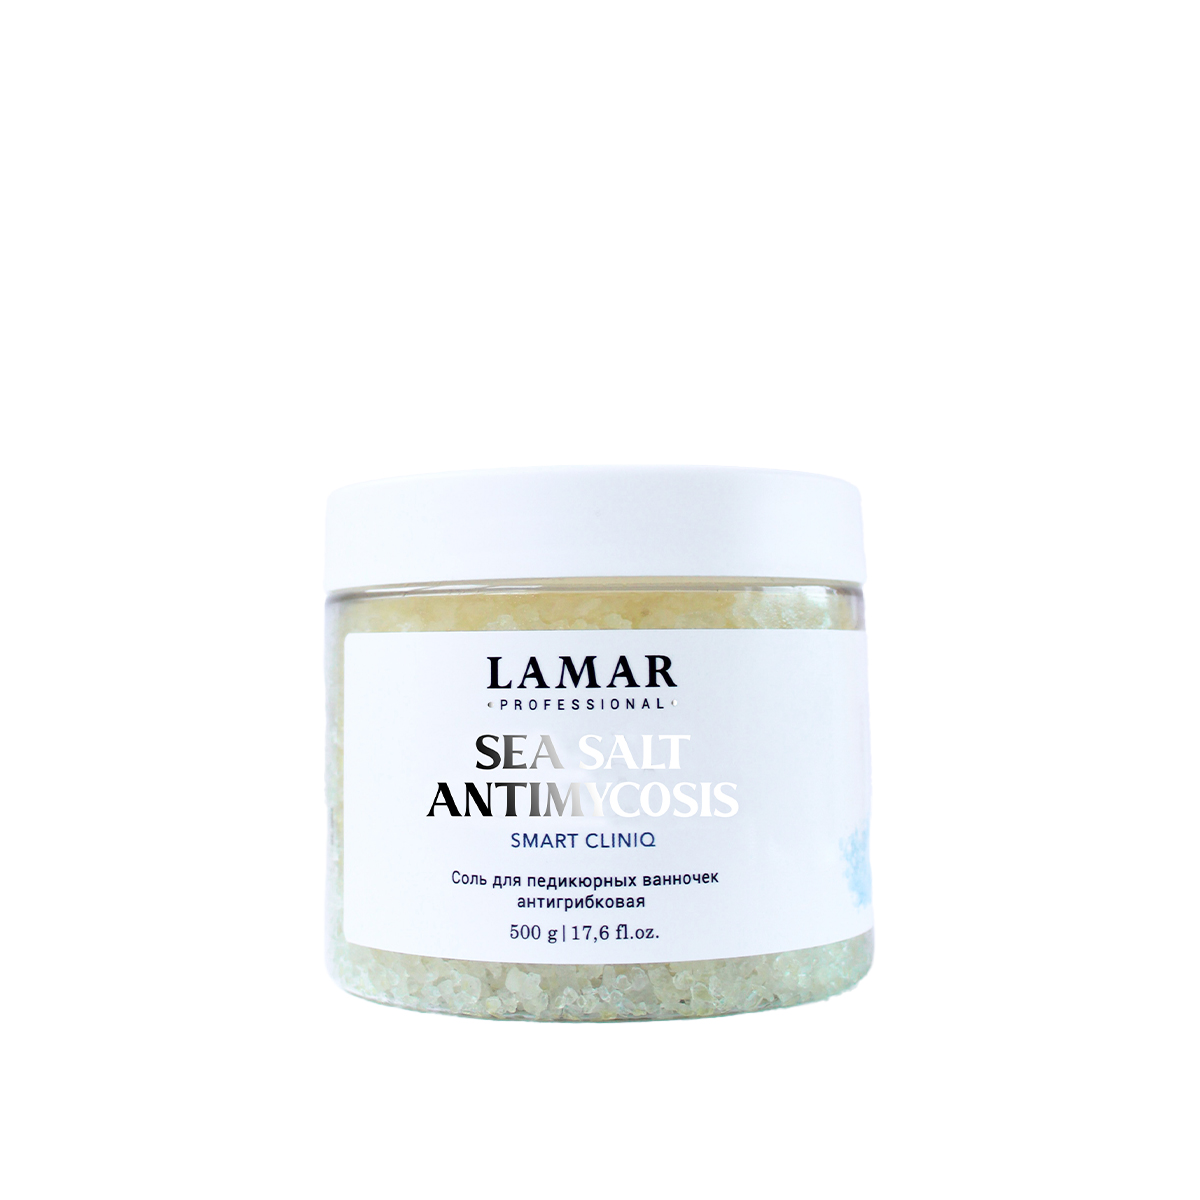 Соль для педикюрных ванночек Lamar Professional антигрибковая Sea salt Antimycosis 500 г крем парафин aravia professional french lavender для парафинотерапии 300 мл